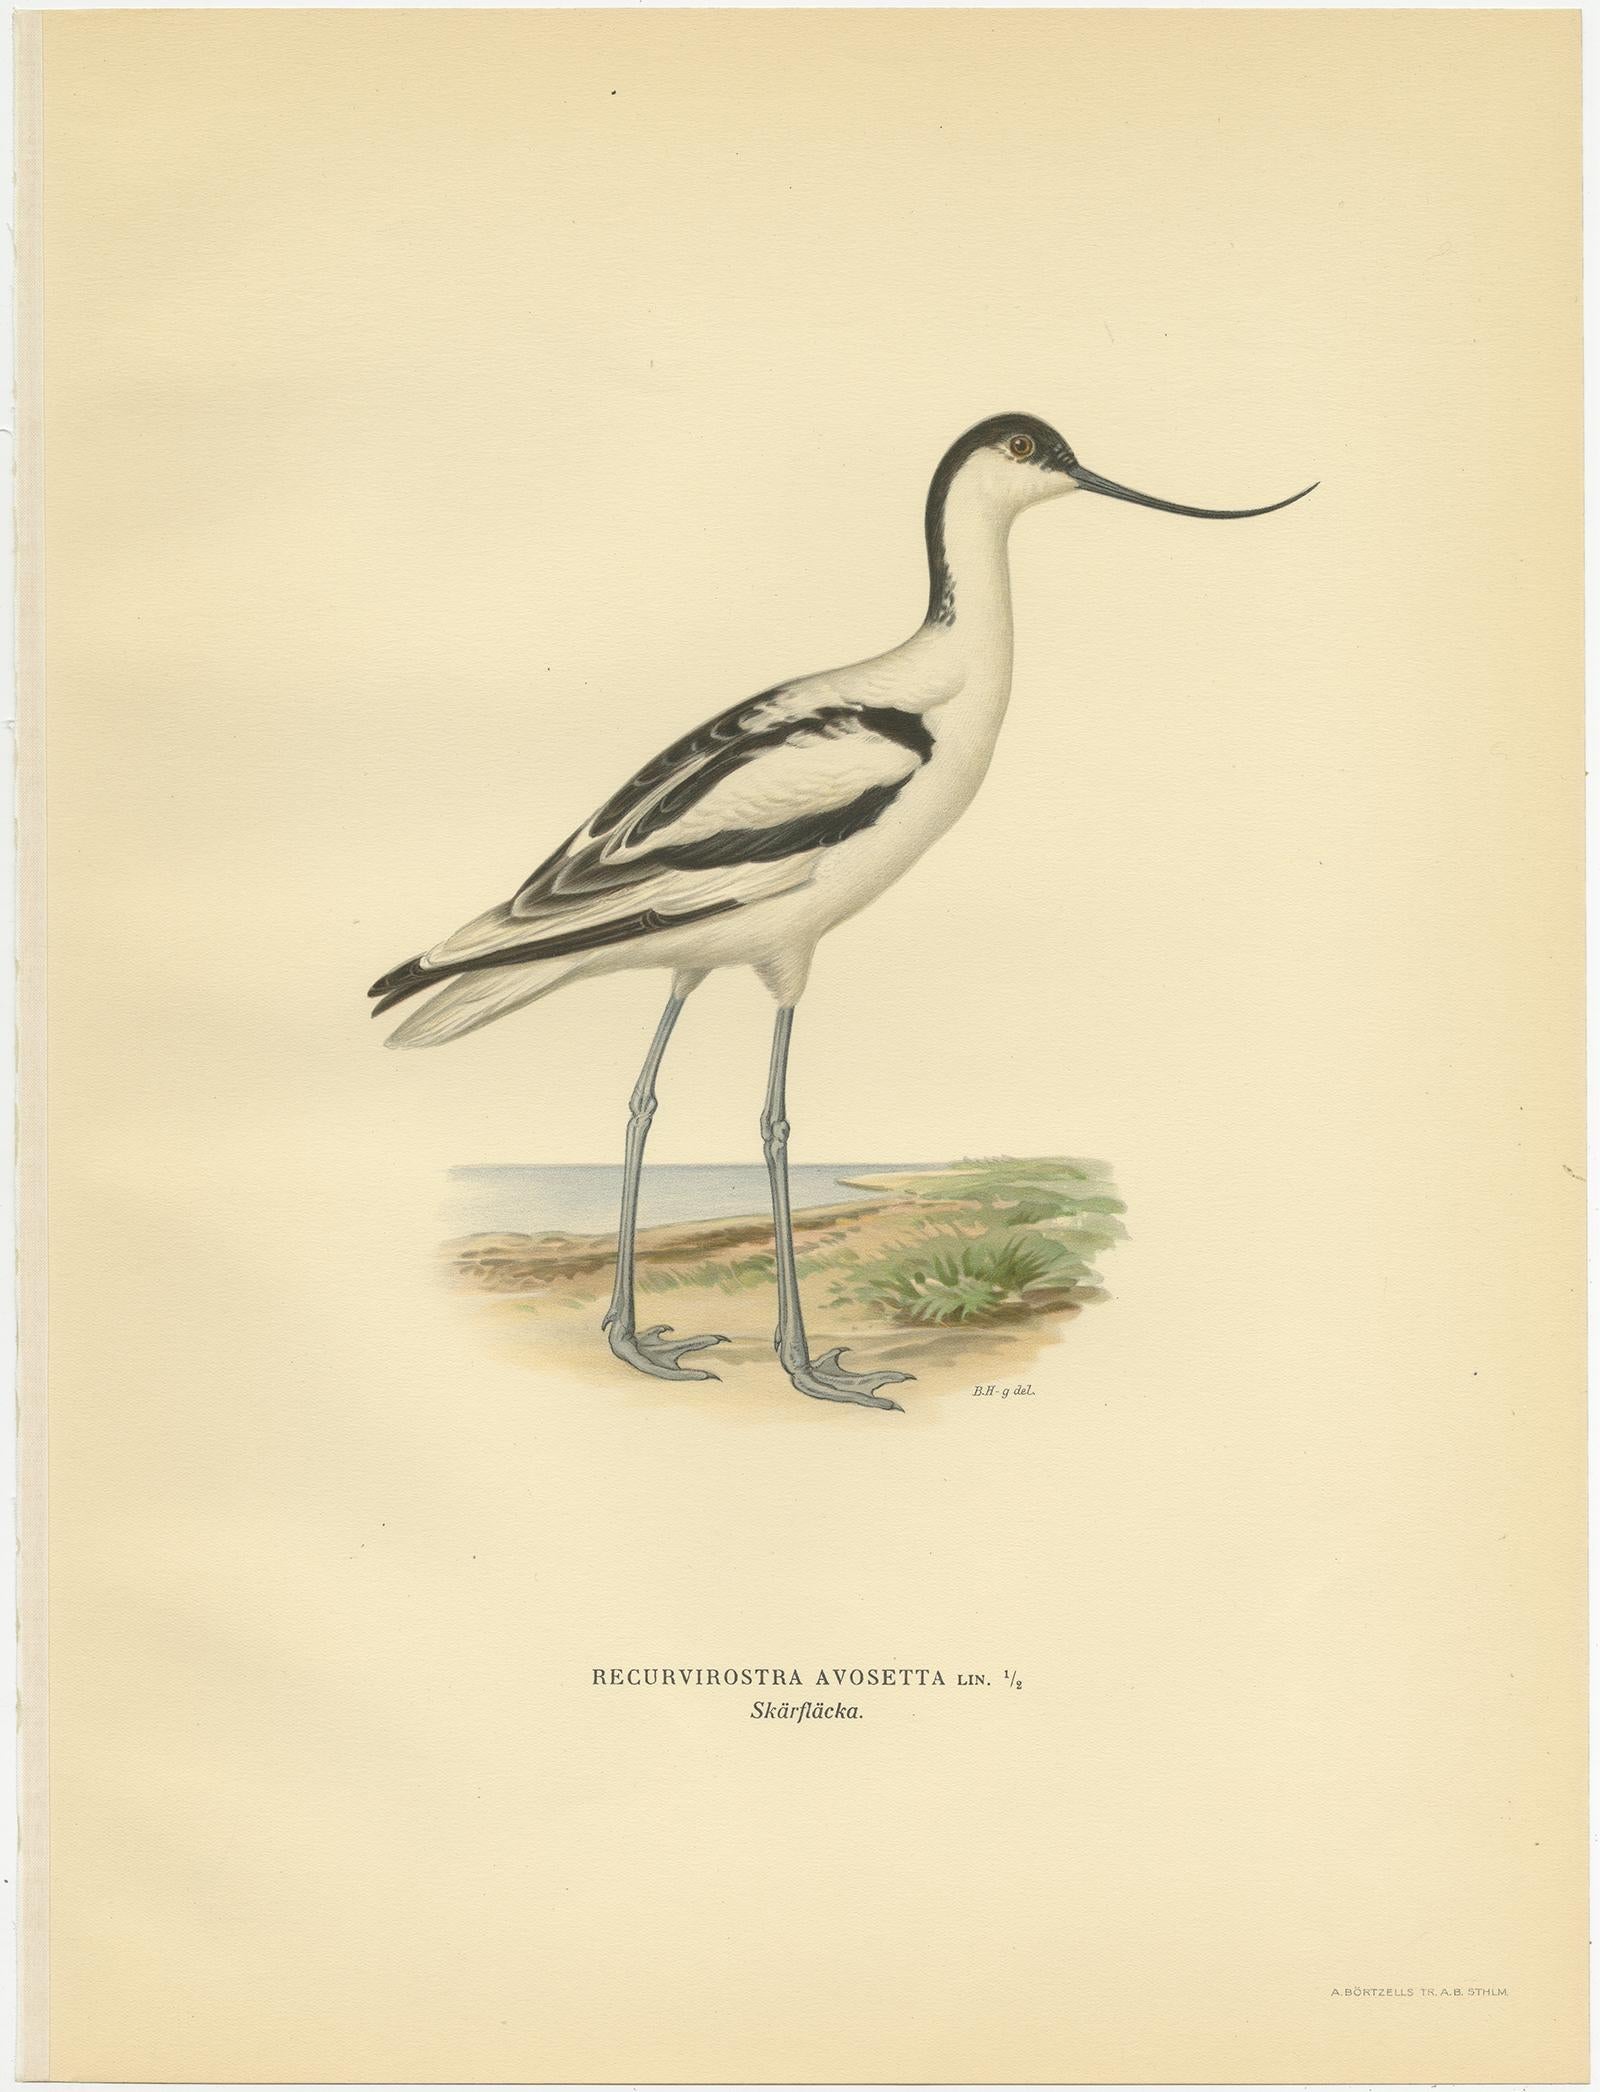 Antique bird print titled 'Recurvirostra Avosetta'. Old bird print depicting the pied avocet. This print originates from 'Svenska Foglar Efter Naturen Och Pa Stenritade' by Magnus von Wright.